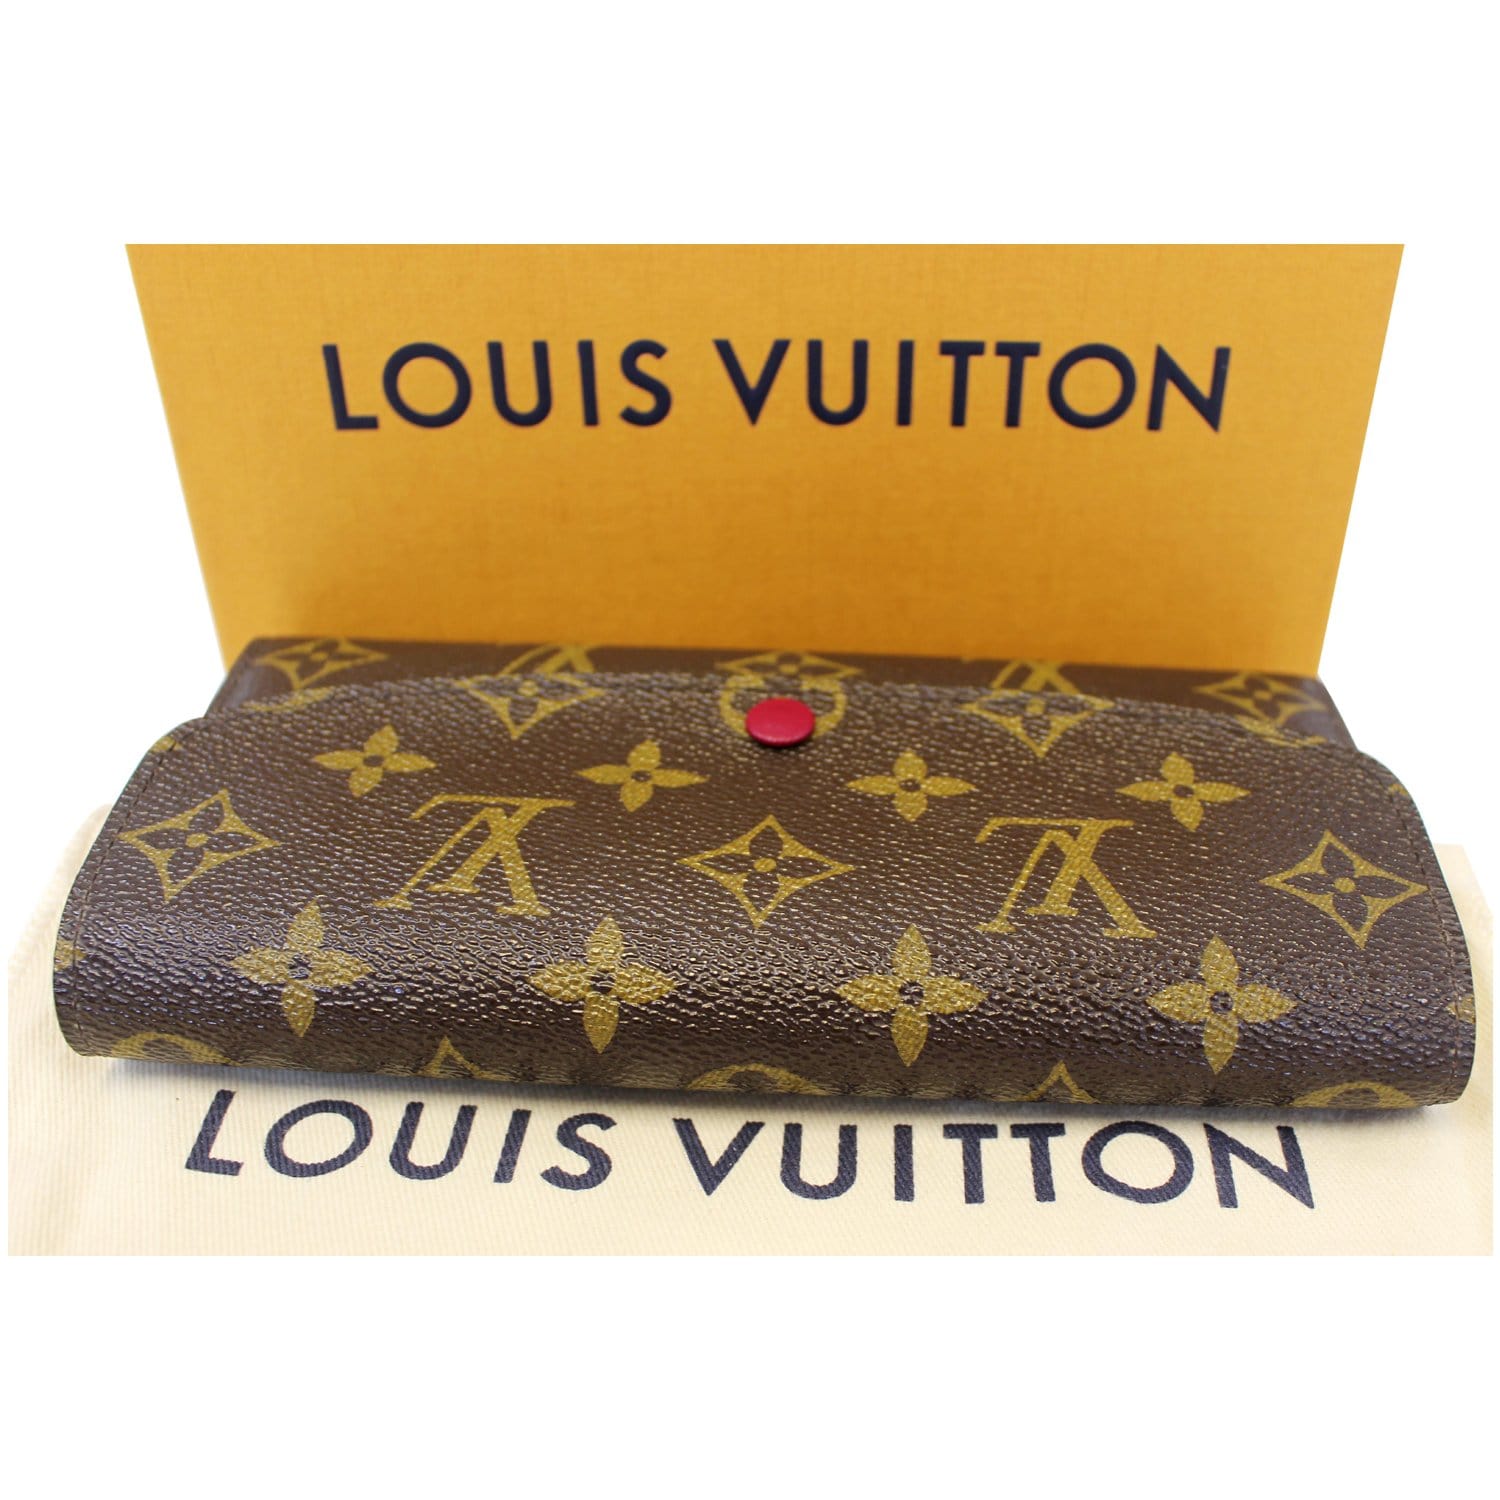 Louis Vuitton Clemence Vs. Emilie Wallet: Comparison 